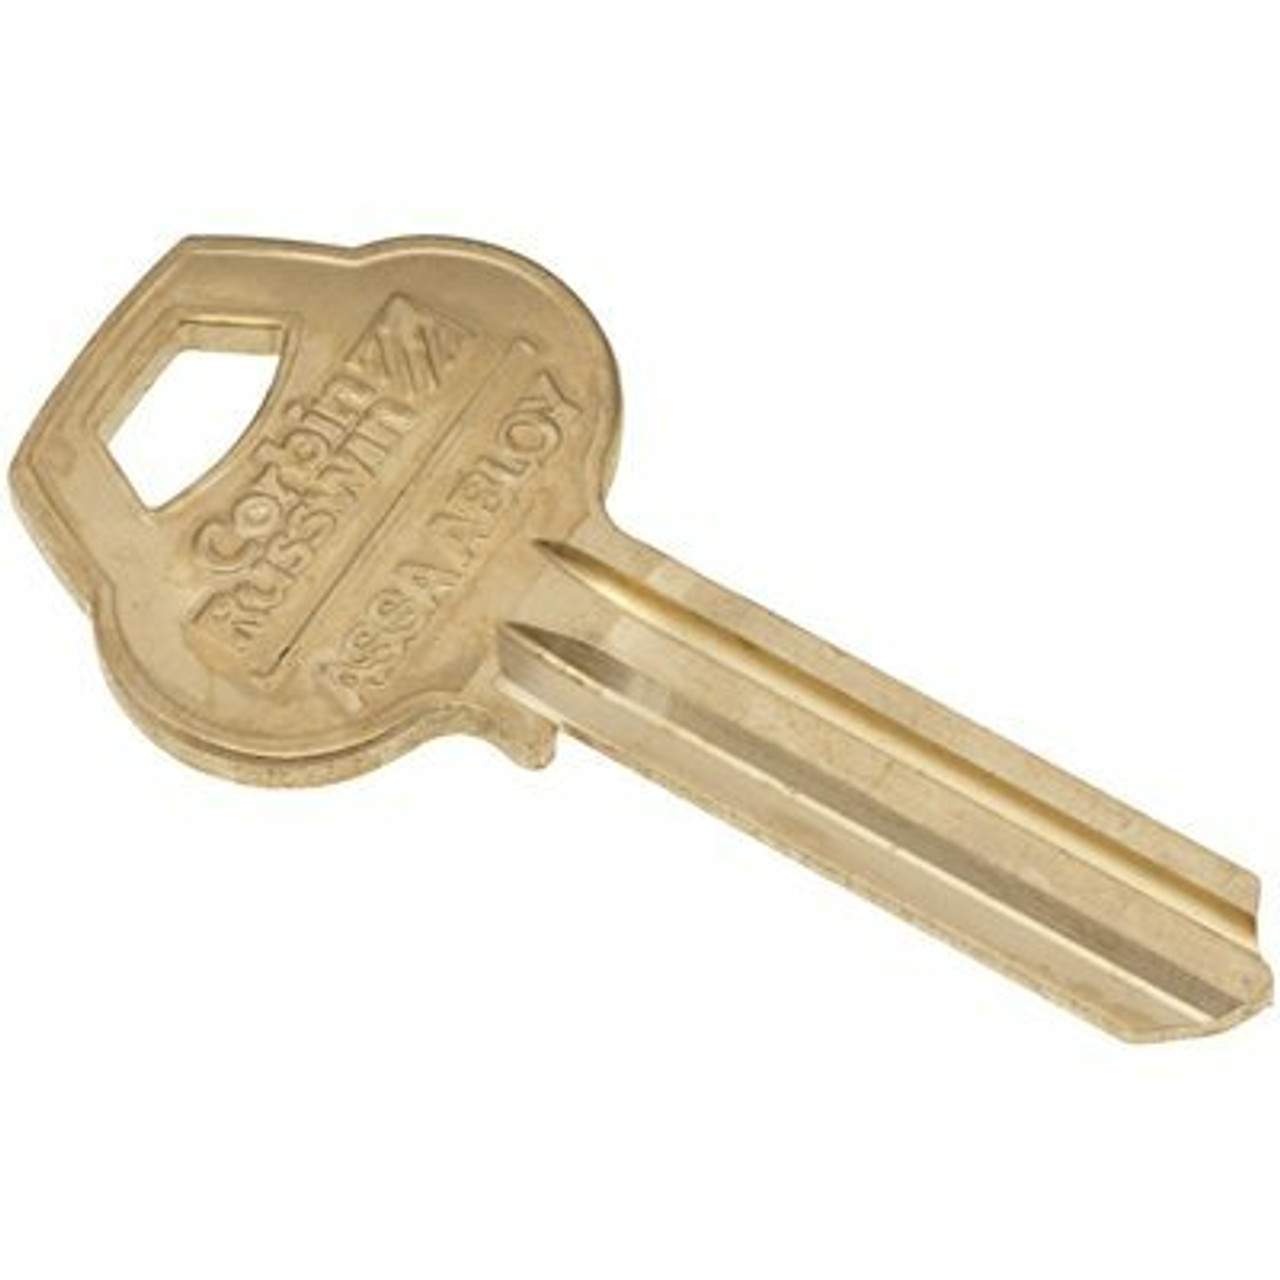 Corbin Russwin Original 6 Pin Keyblank D2R